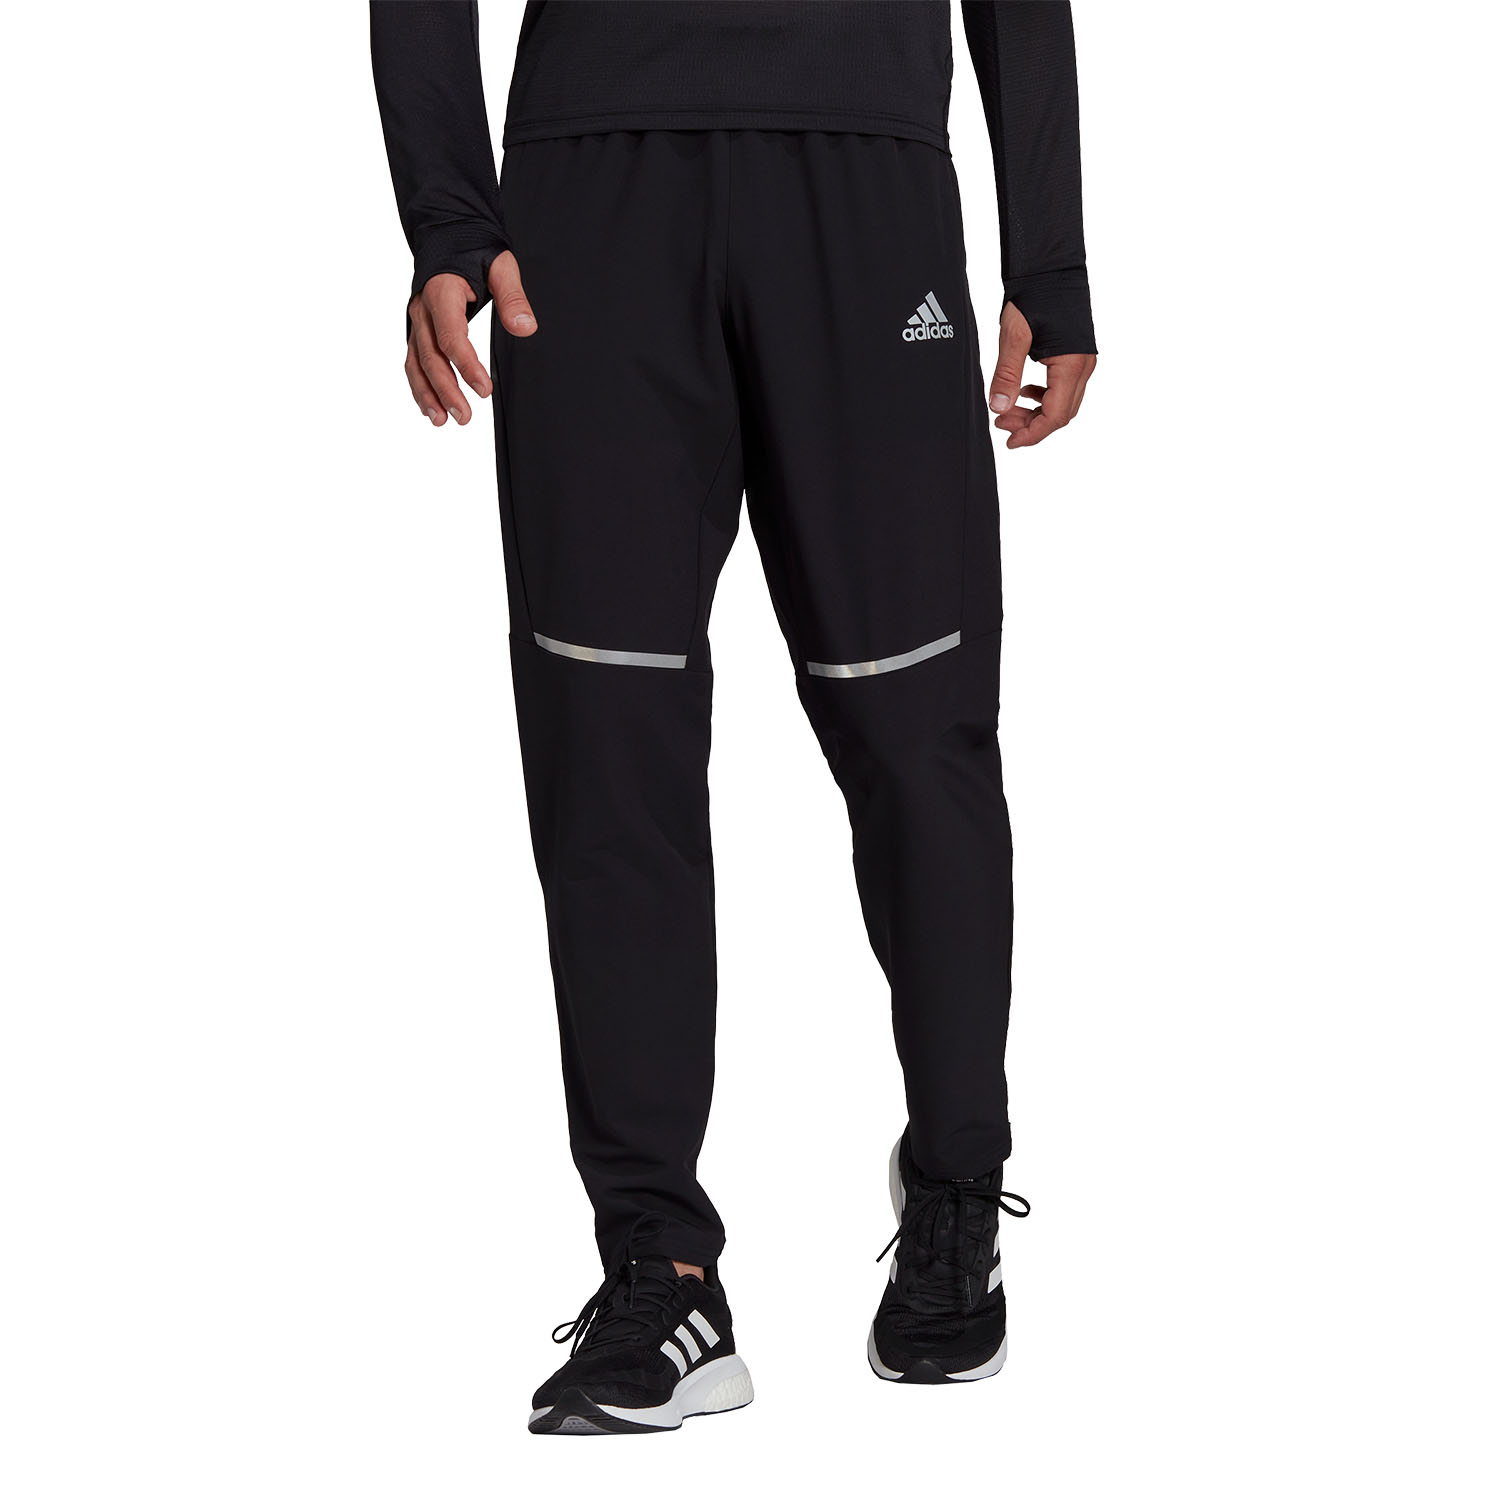 adidas OTR Shell Men's Running Pants - Black